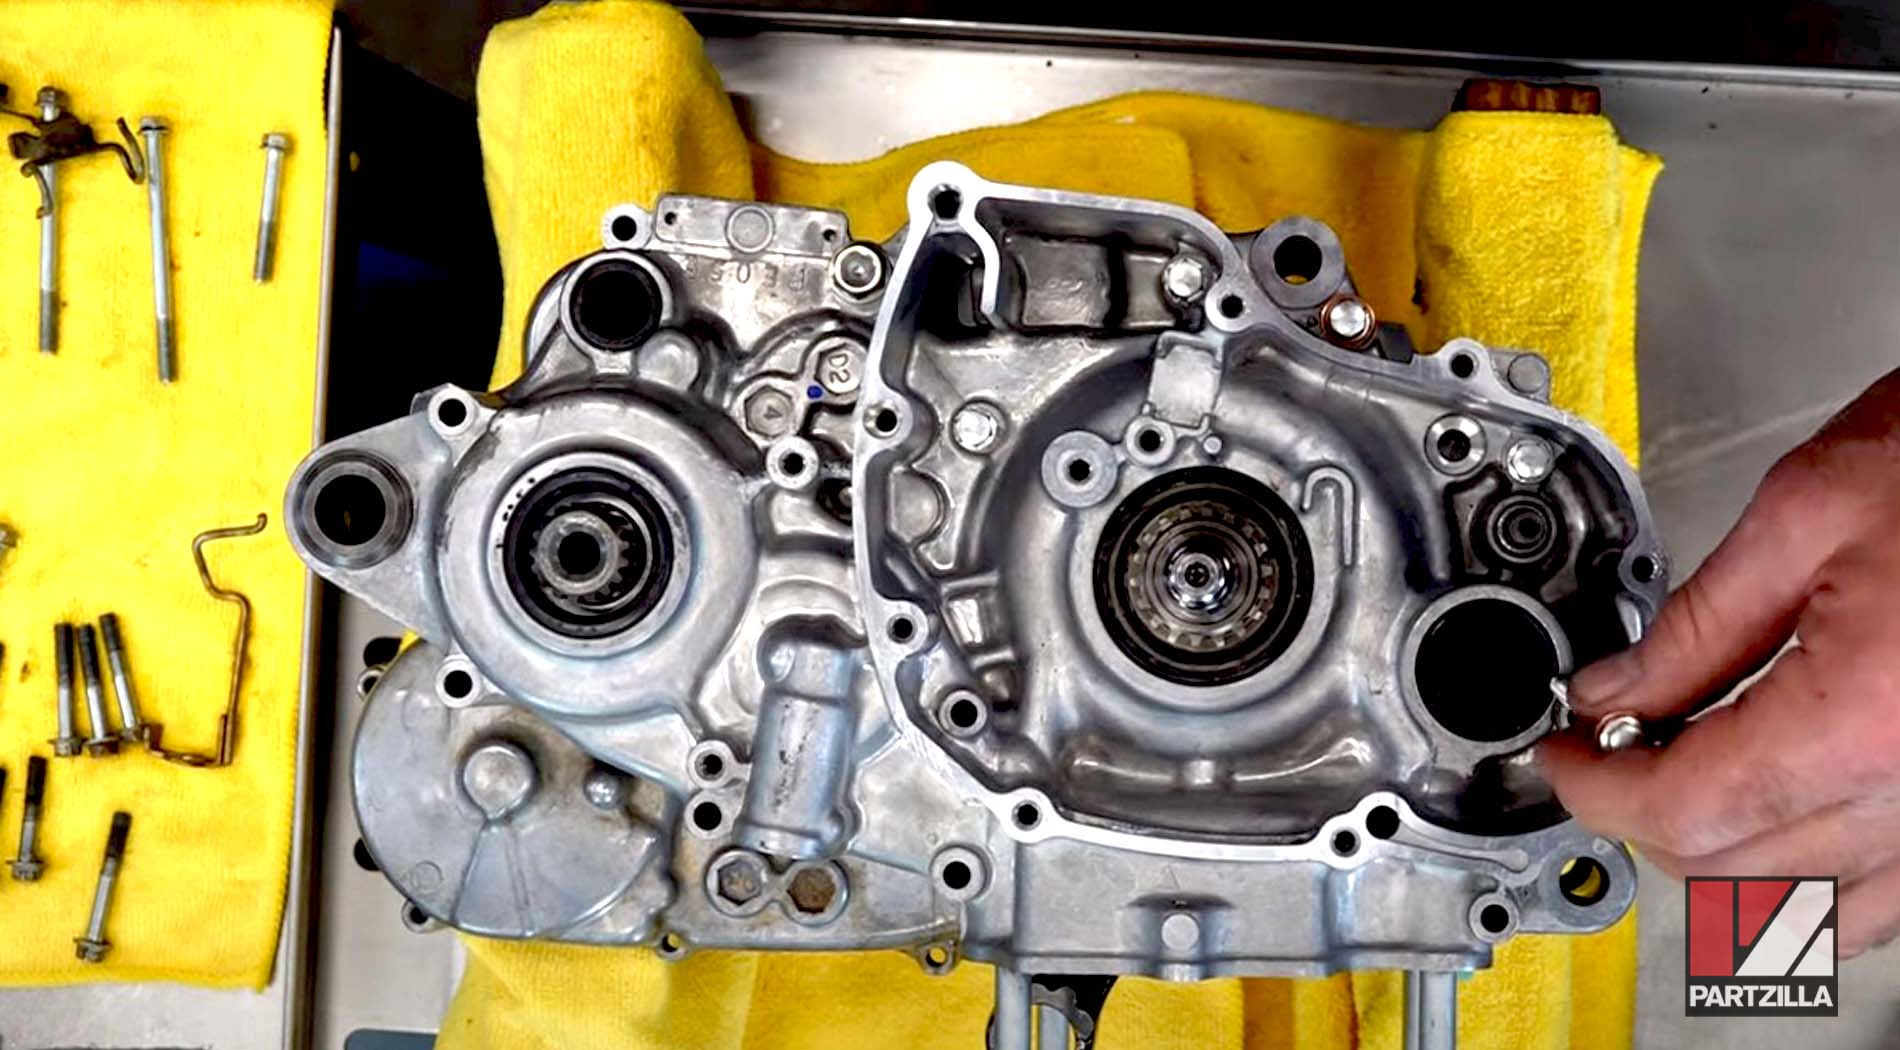 Honda CRF450 motorcycle engine crankcase